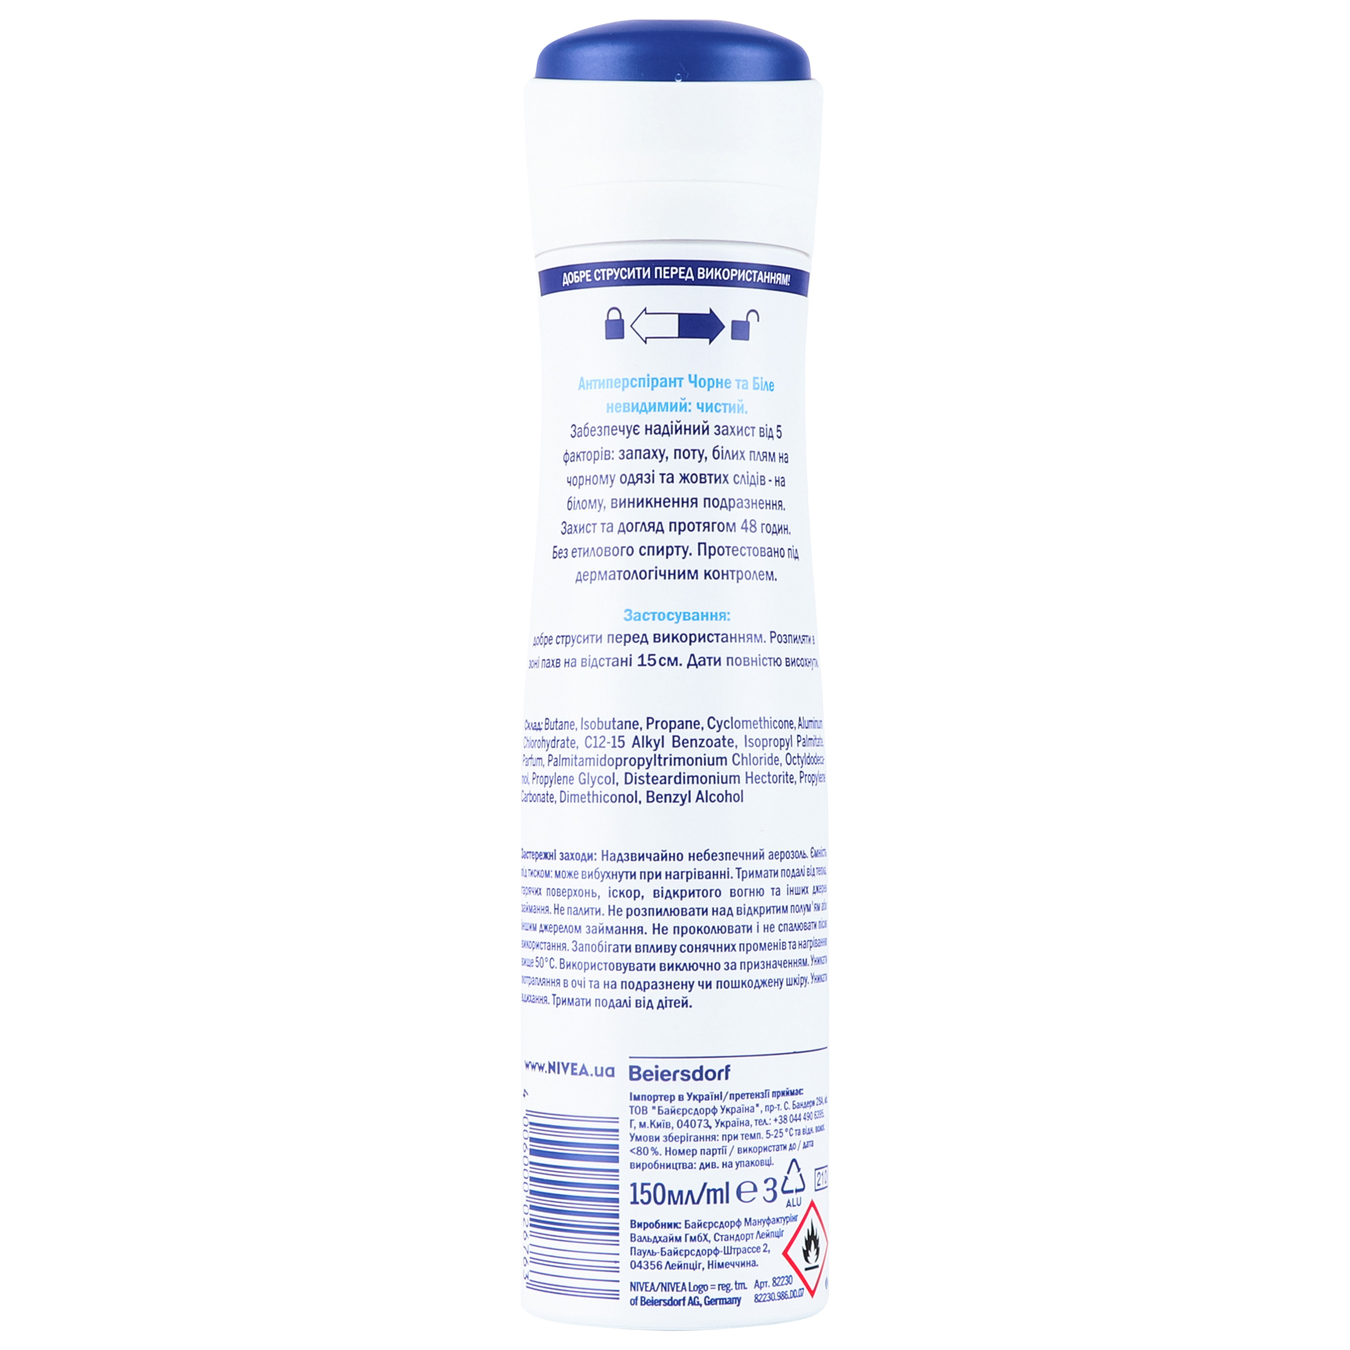 Deodorant Nivea for women Invisible Pure Invisible Protection spray 150ml 8